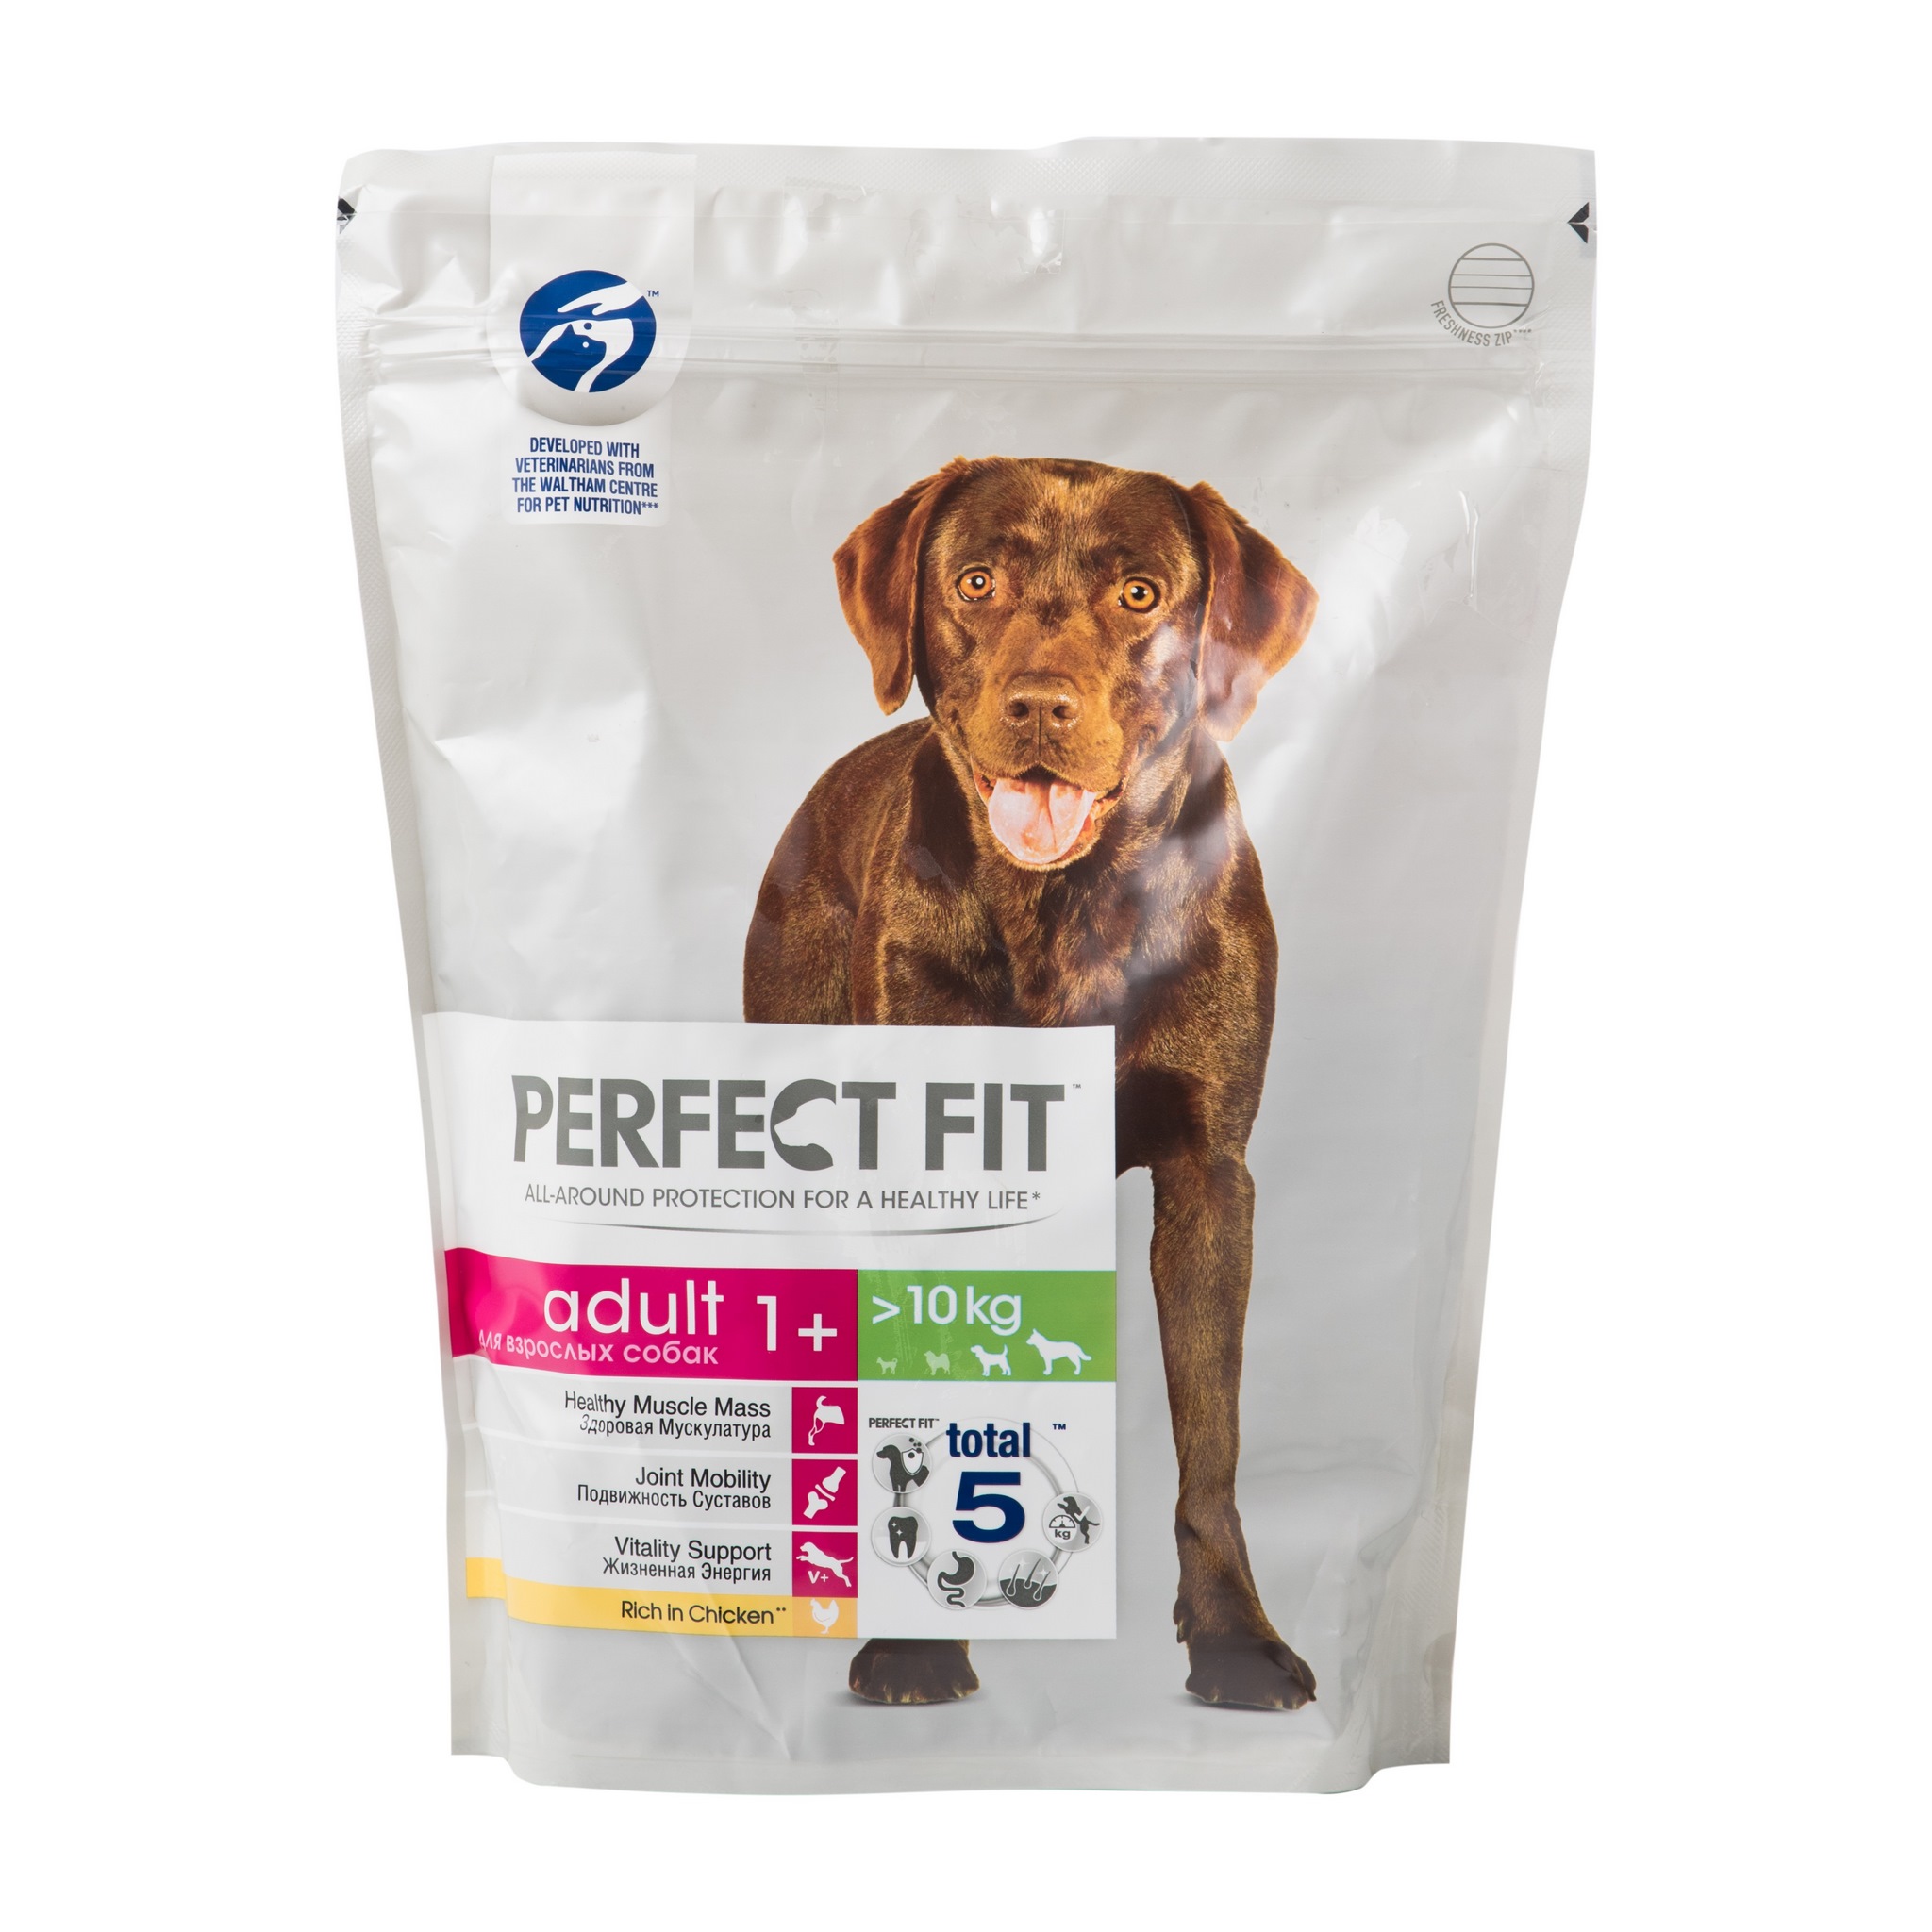 Сухой корм для собак Perfect fit с курицей,для средних и крупных пород -  рейтинг 4,82 по отзывам экспертов ☑ Экспертиза состава и производителя |  Роскачество